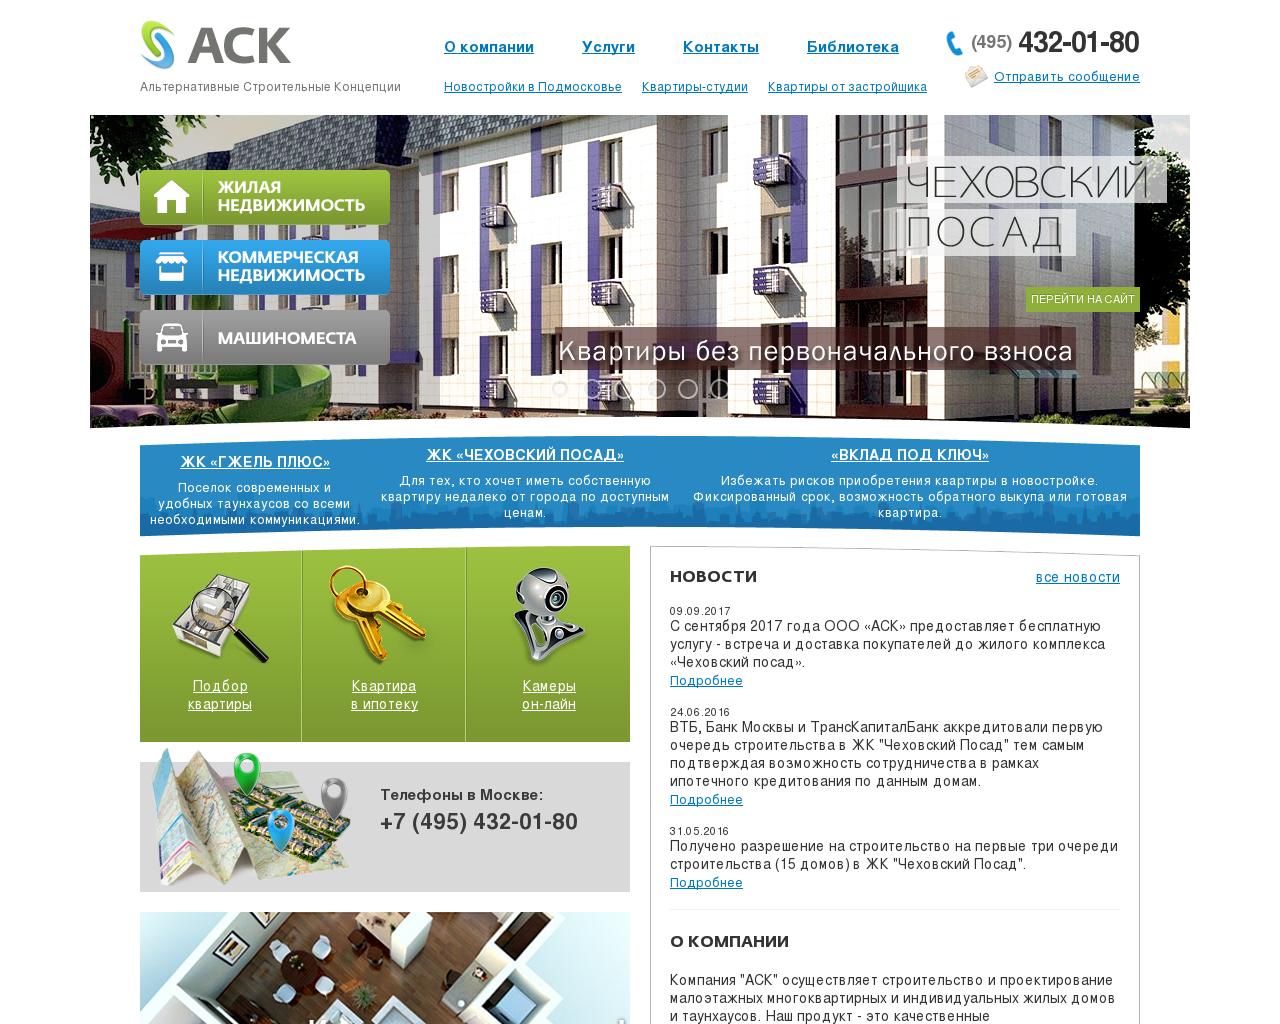 Изображение сайта ack1.ru в разрешении 1280x1024